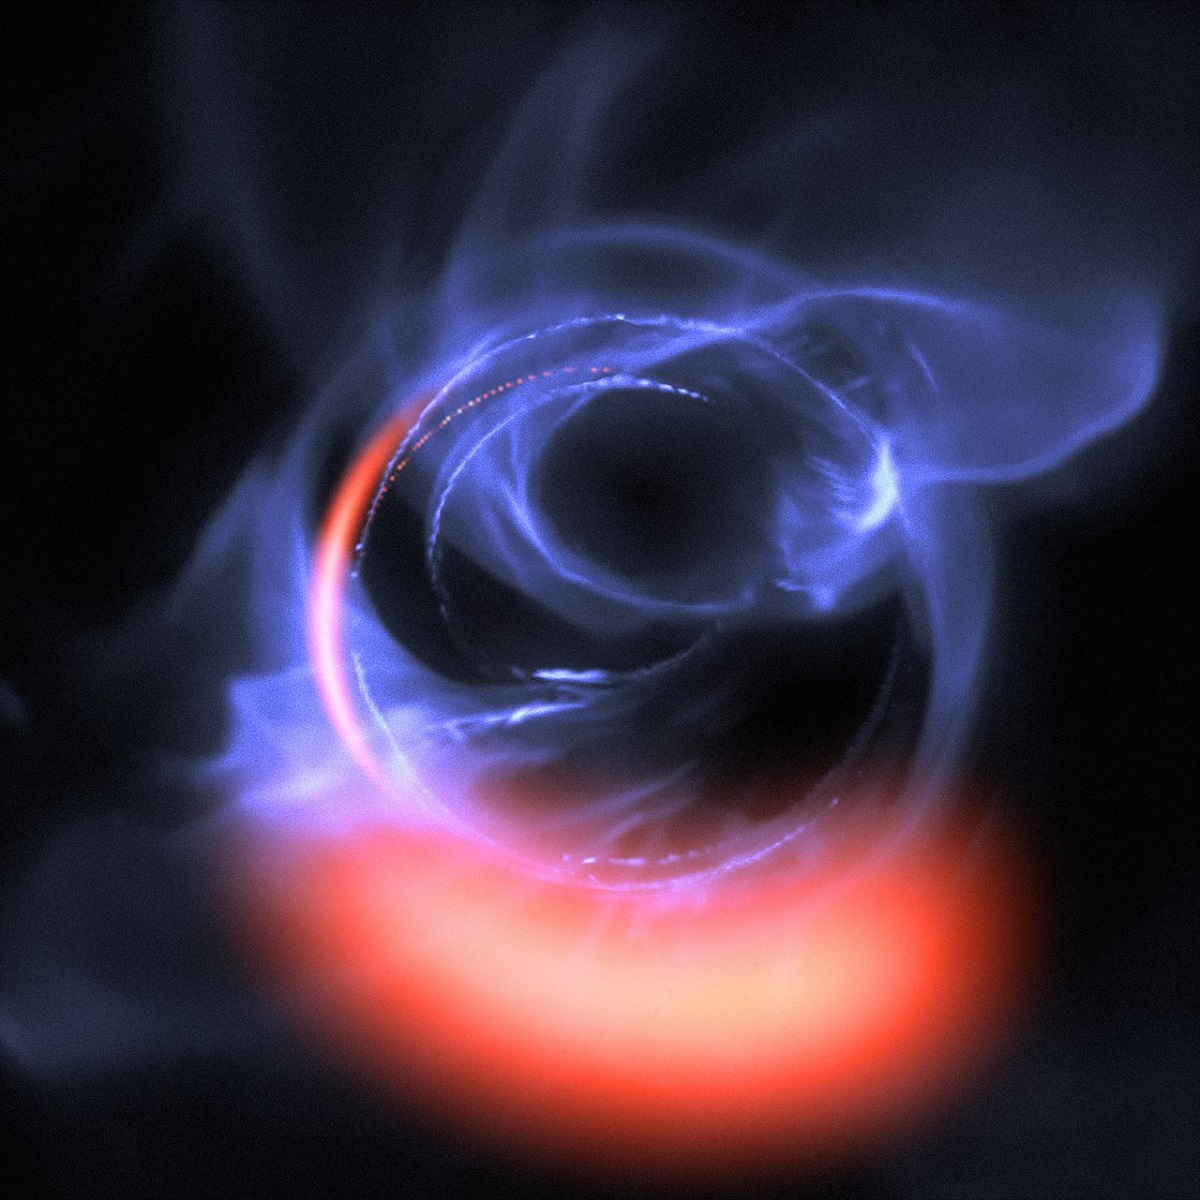 Астрономам удалось подобраться к самому сердцу черной дыры Млечного пути! Скоро они встретятся лицом к лицу! (Захватывающее видео)